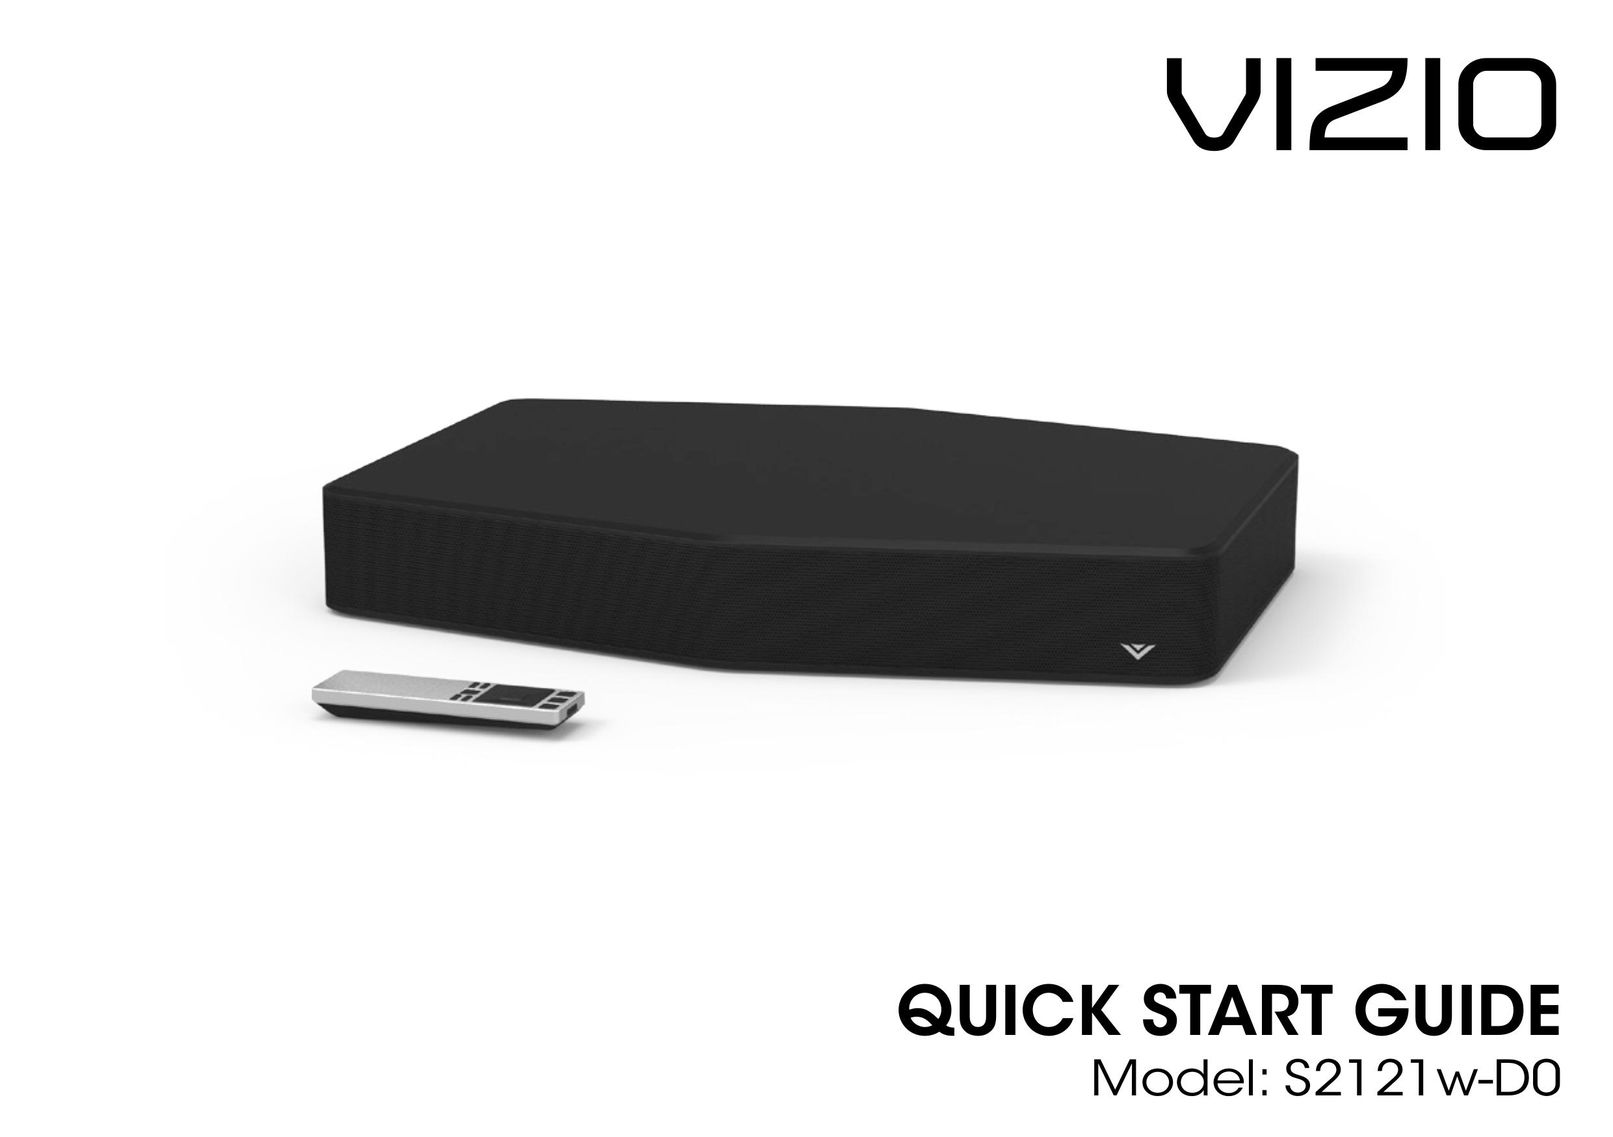 Vizio S2121w-D0 TV Video Accessories User Manual